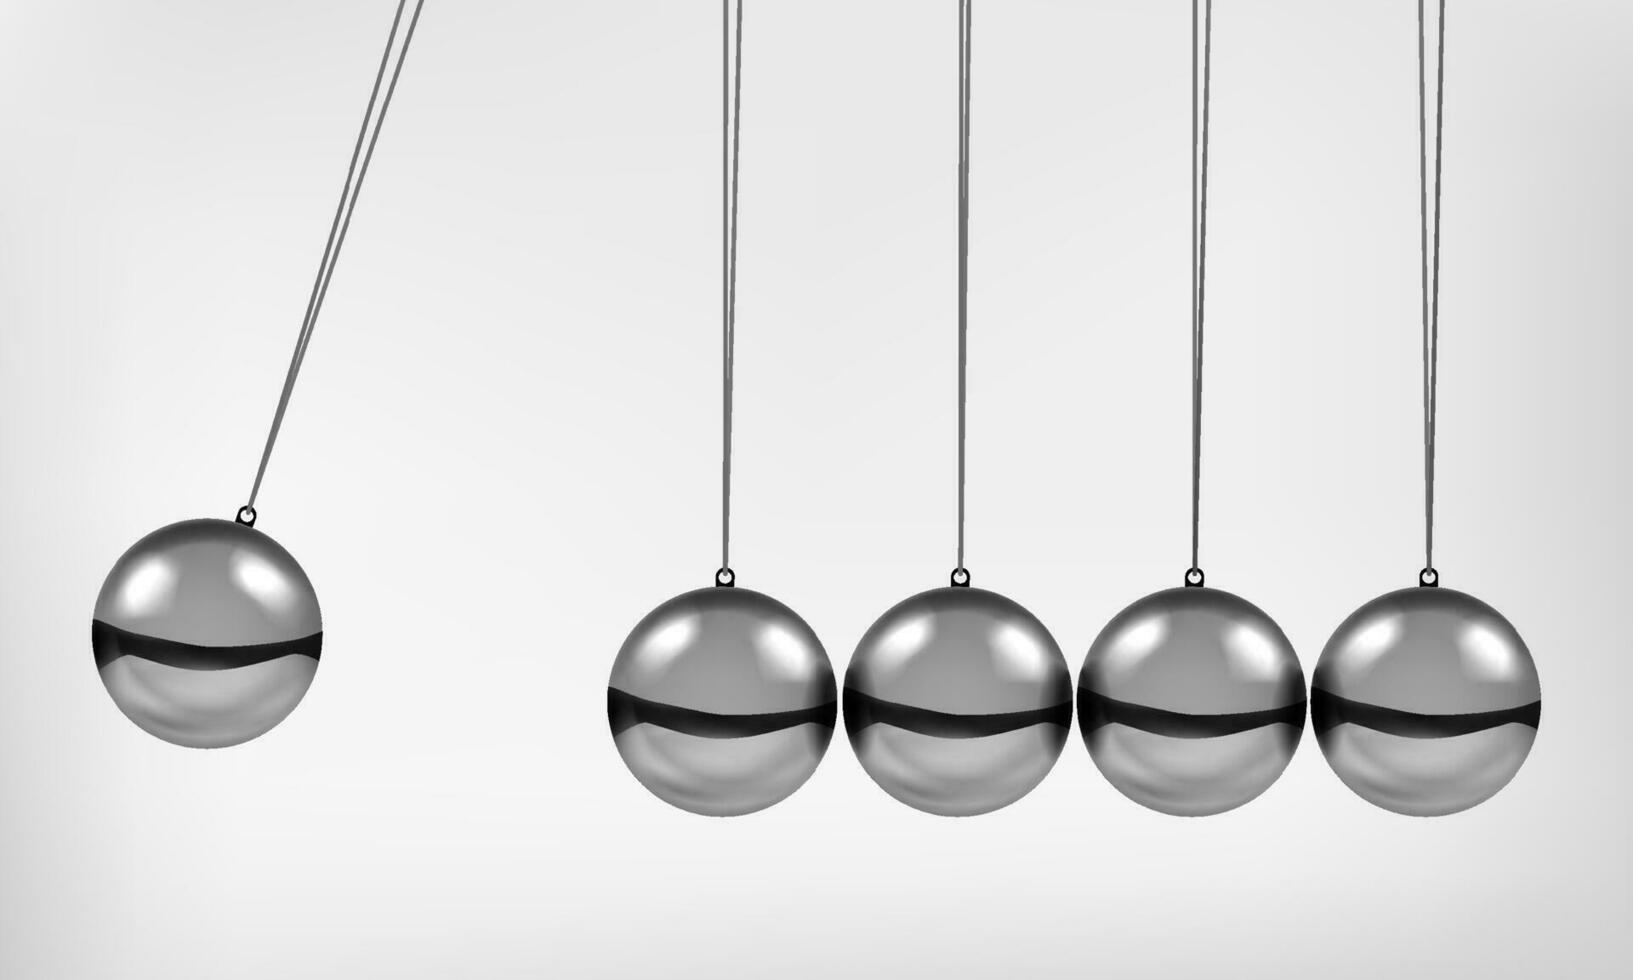 Newton's wieg slinger met swinging bollen metaal ballen 3d realistisch vector illustratie.